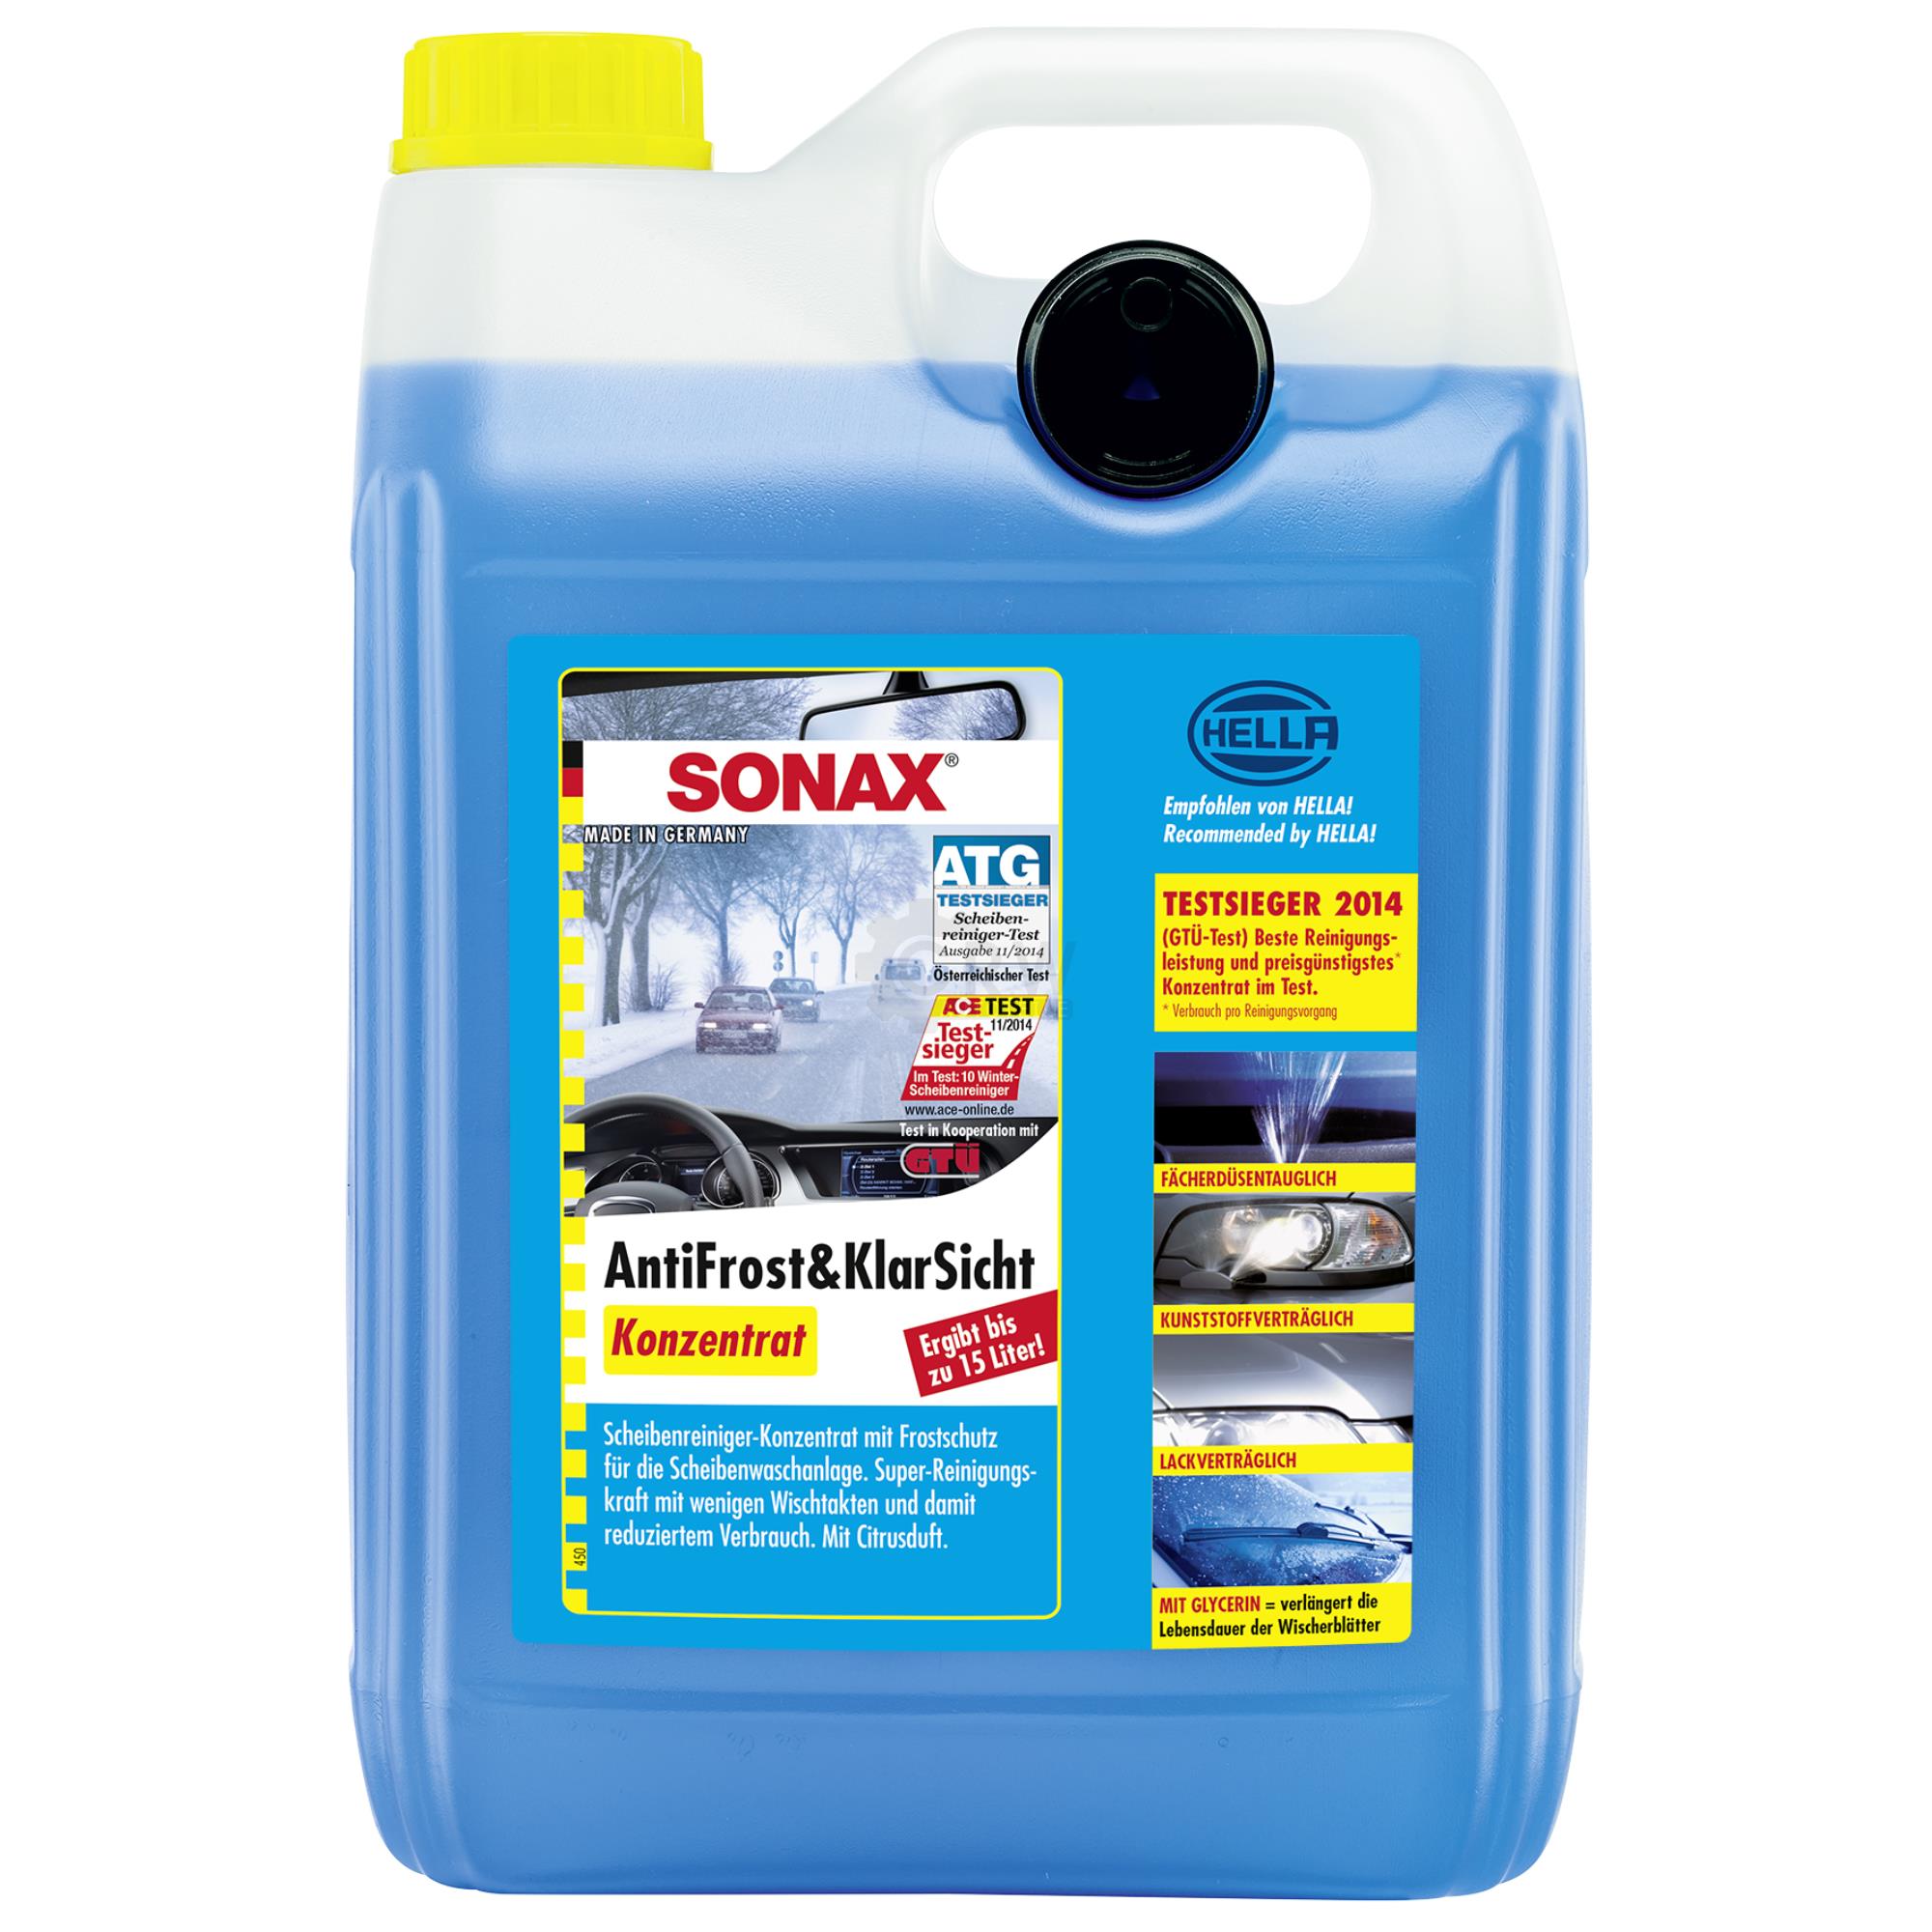 SONAX AntiFrost&KlarSicht Konzentrat Frostschutz Waschanlage 5 Liter